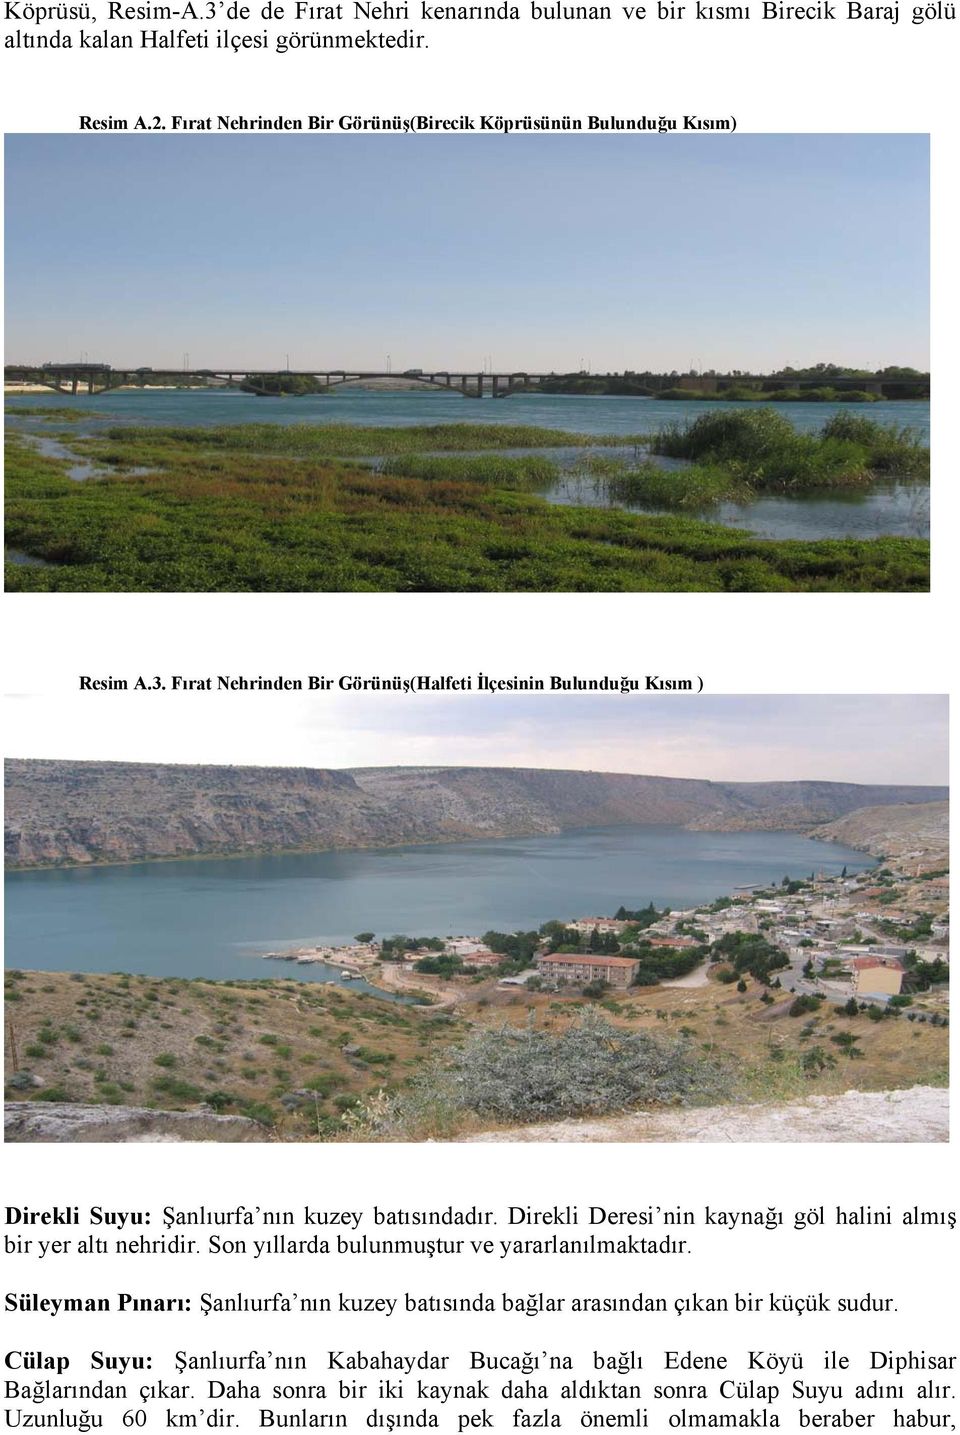 Direkli Deresi nin kaynağı göl halini almış bir yer altı nehridir. Son yıllarda bulunmuştur ve yararlanılmaktadır.